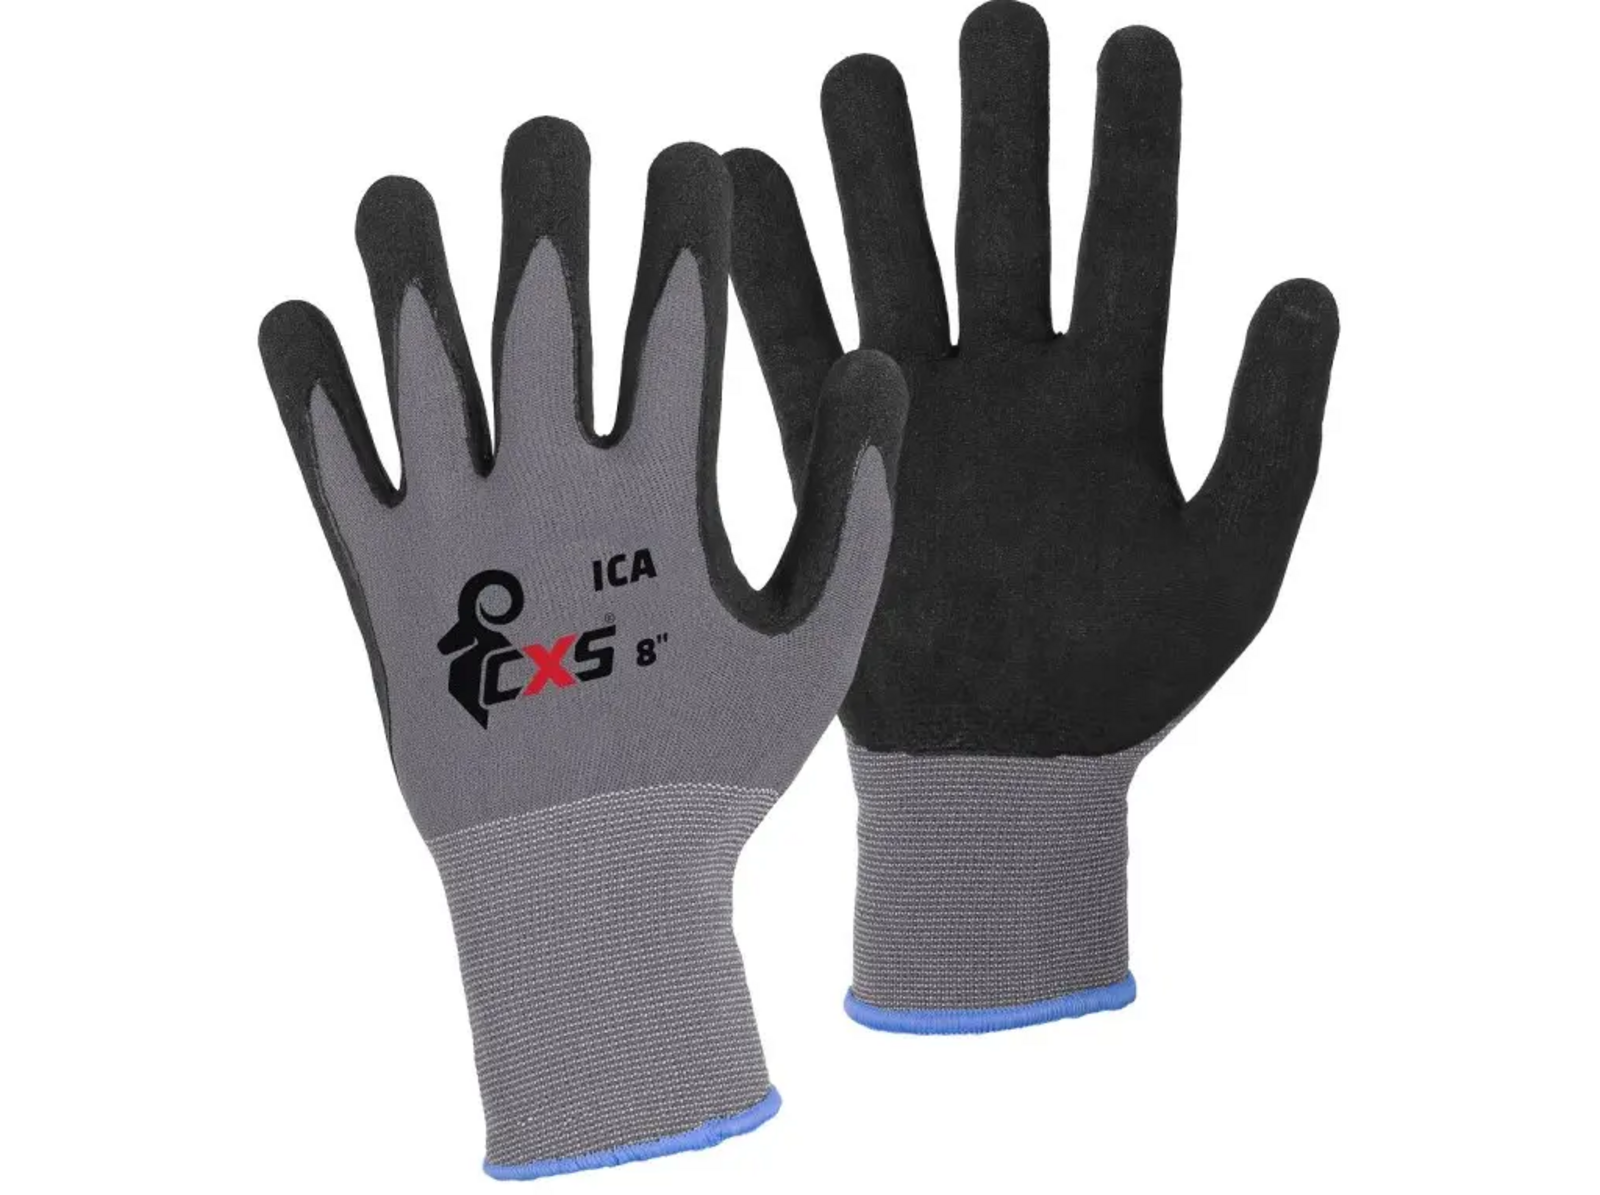 Povrstvené rukavice CXS Ica - veľkosť: 10/XL, farba: sivá/čierna